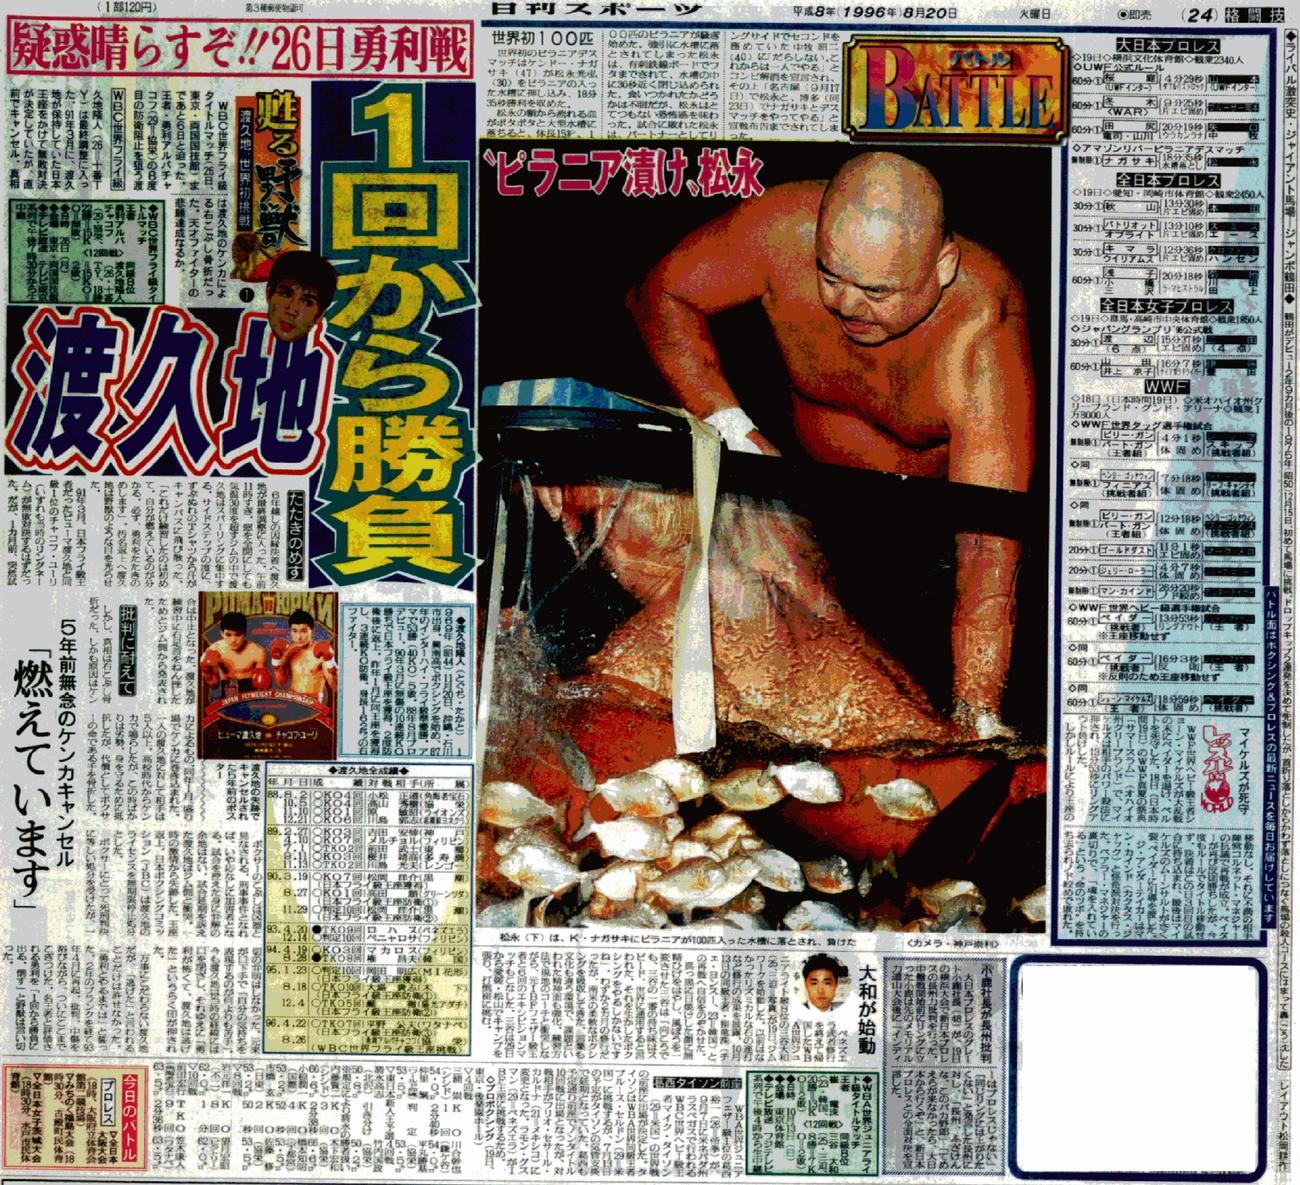 ナガサキさんは松永光弘をピラニアが泳ぐ水槽に沈めてデスマッチに勝利（96年8月20日、日刊スポーツ首都圏版）